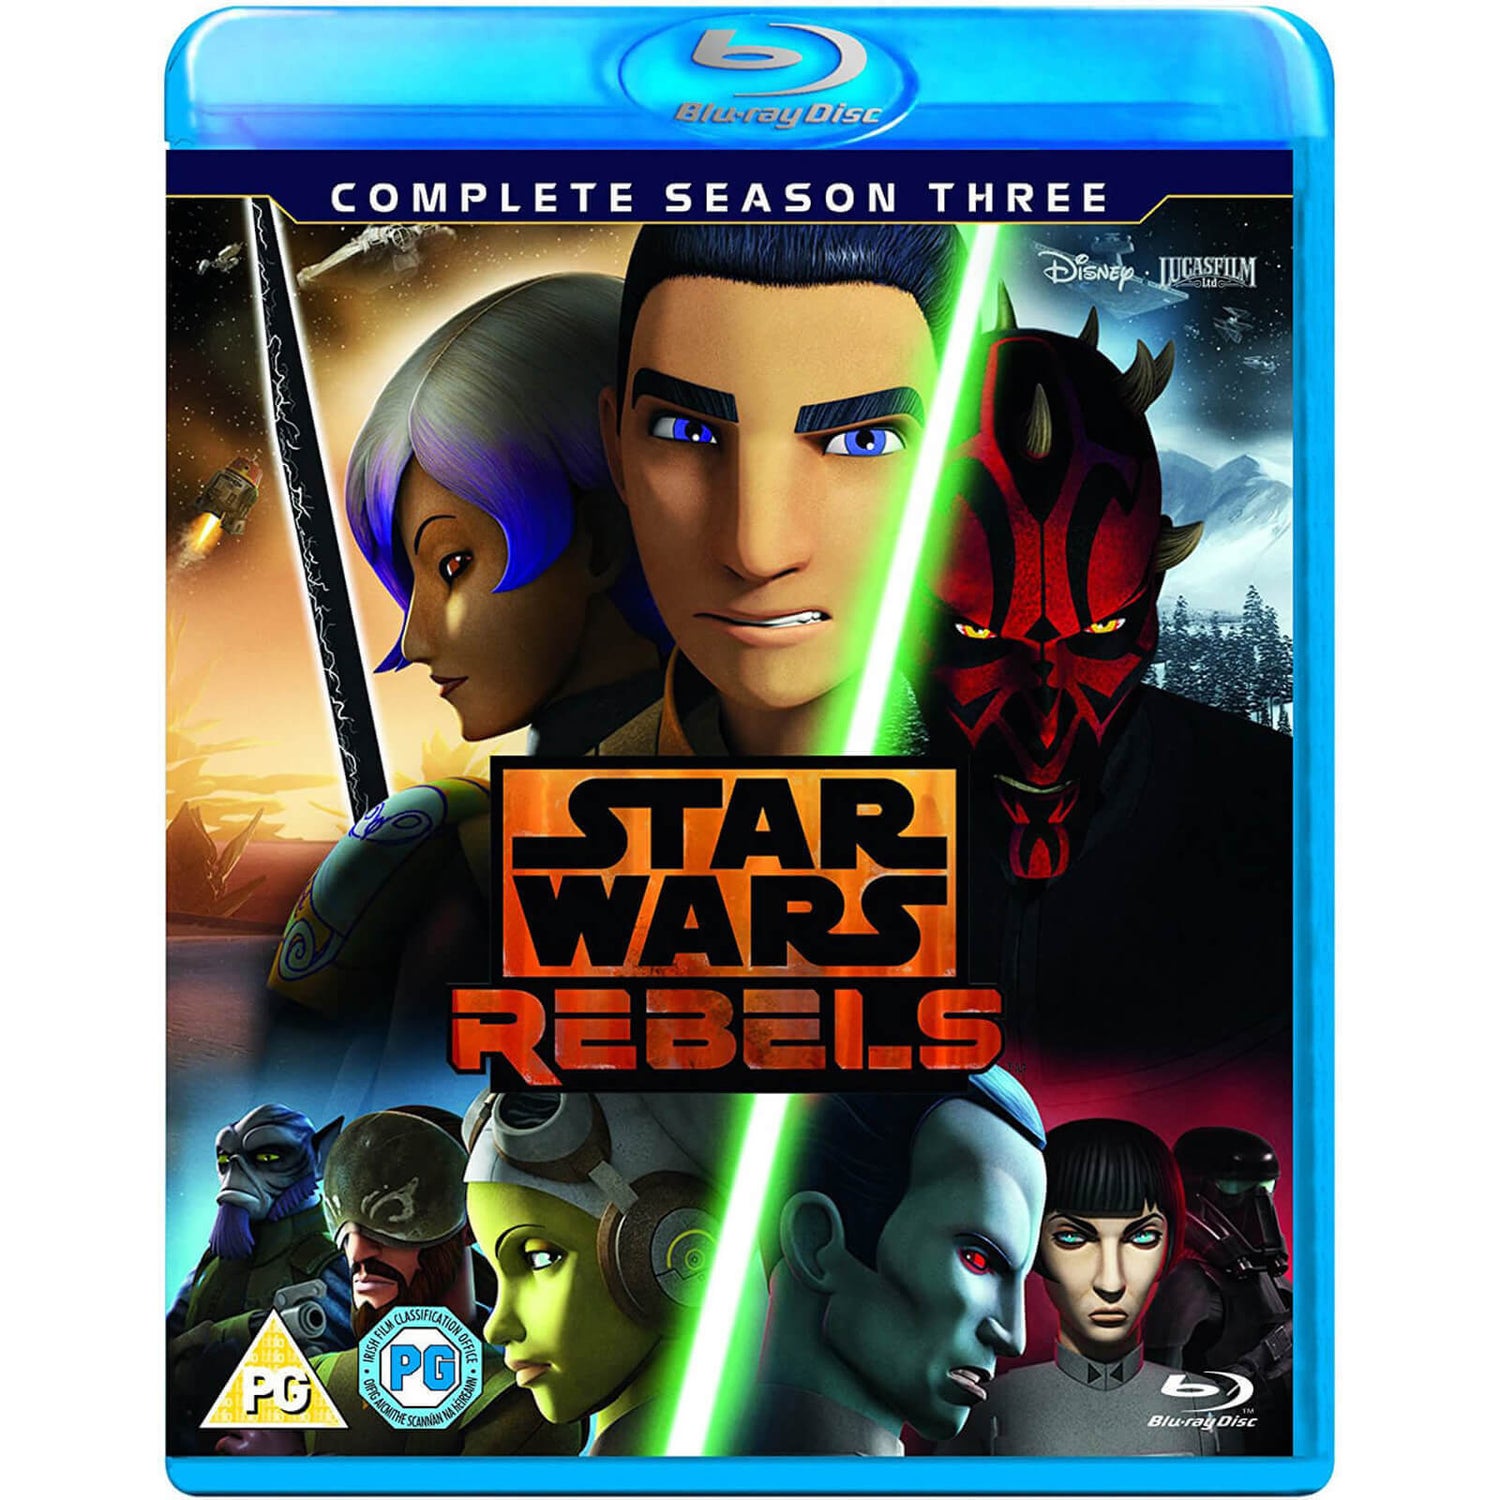 Star Wars Rebels: Complete Season 1 [Blu-ray] [2 Discs] - Best Buy